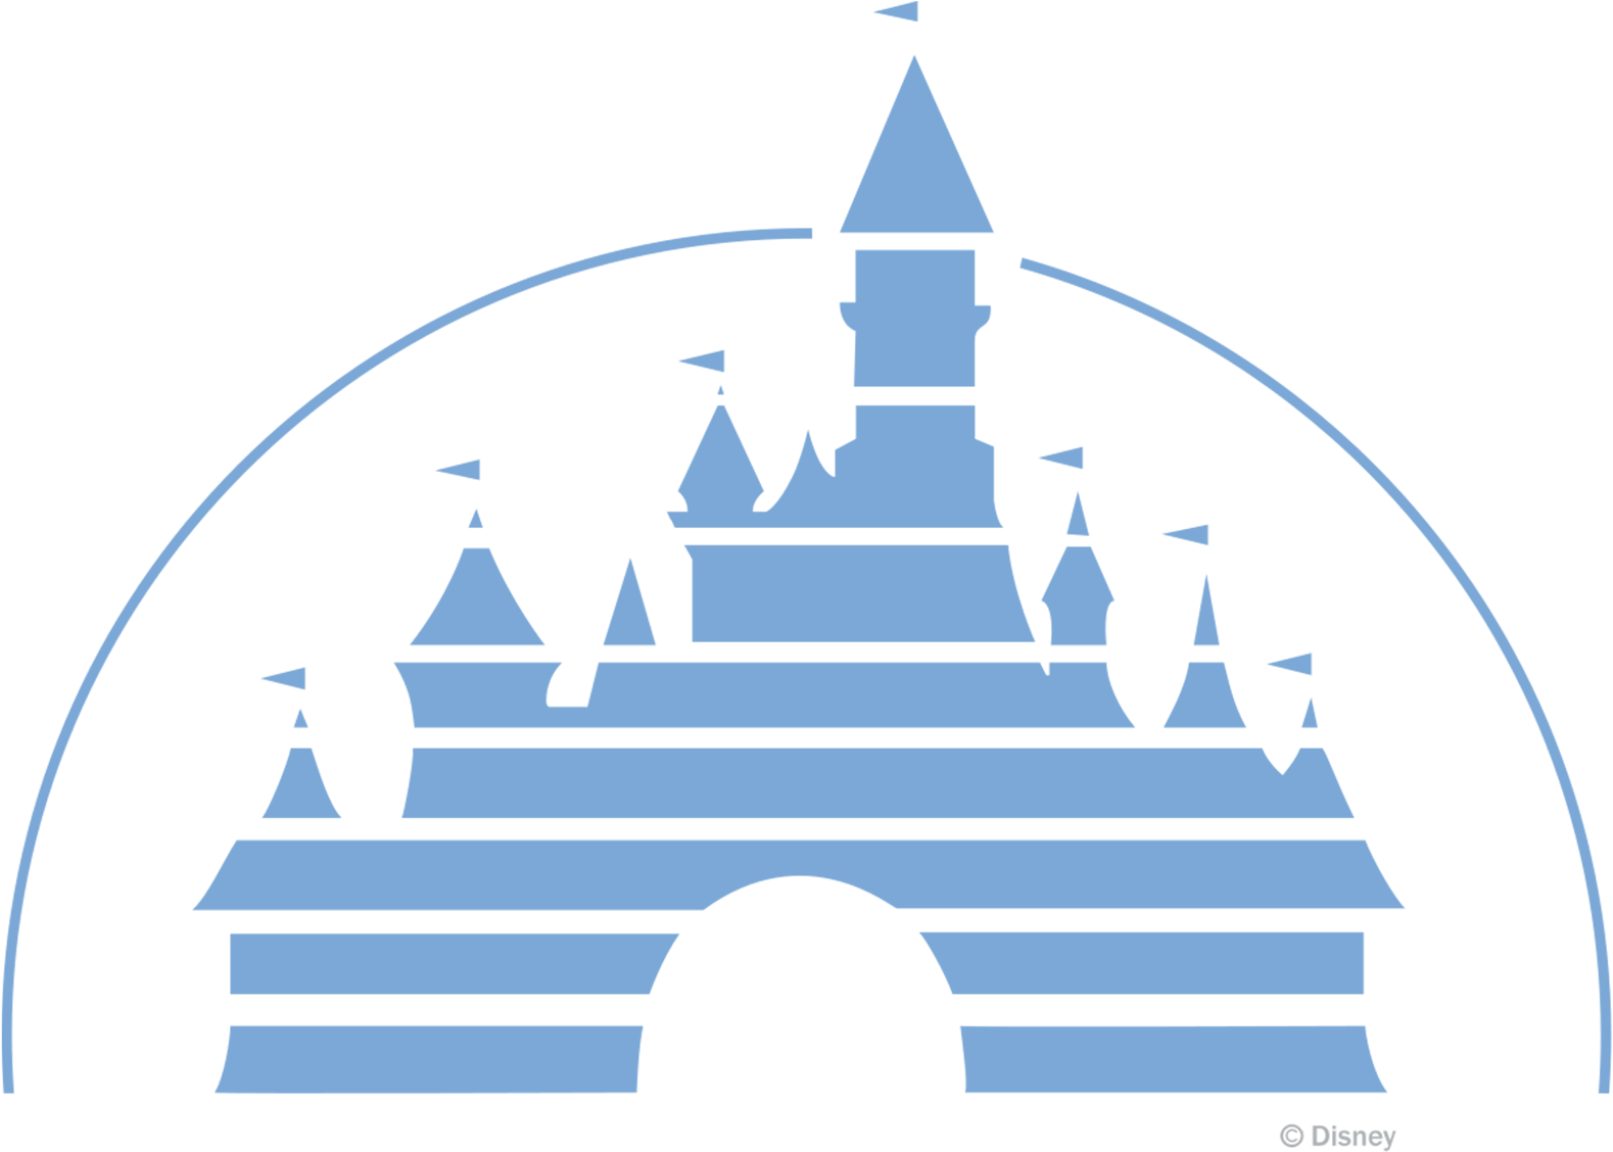 Immagine del logo del castello Disney